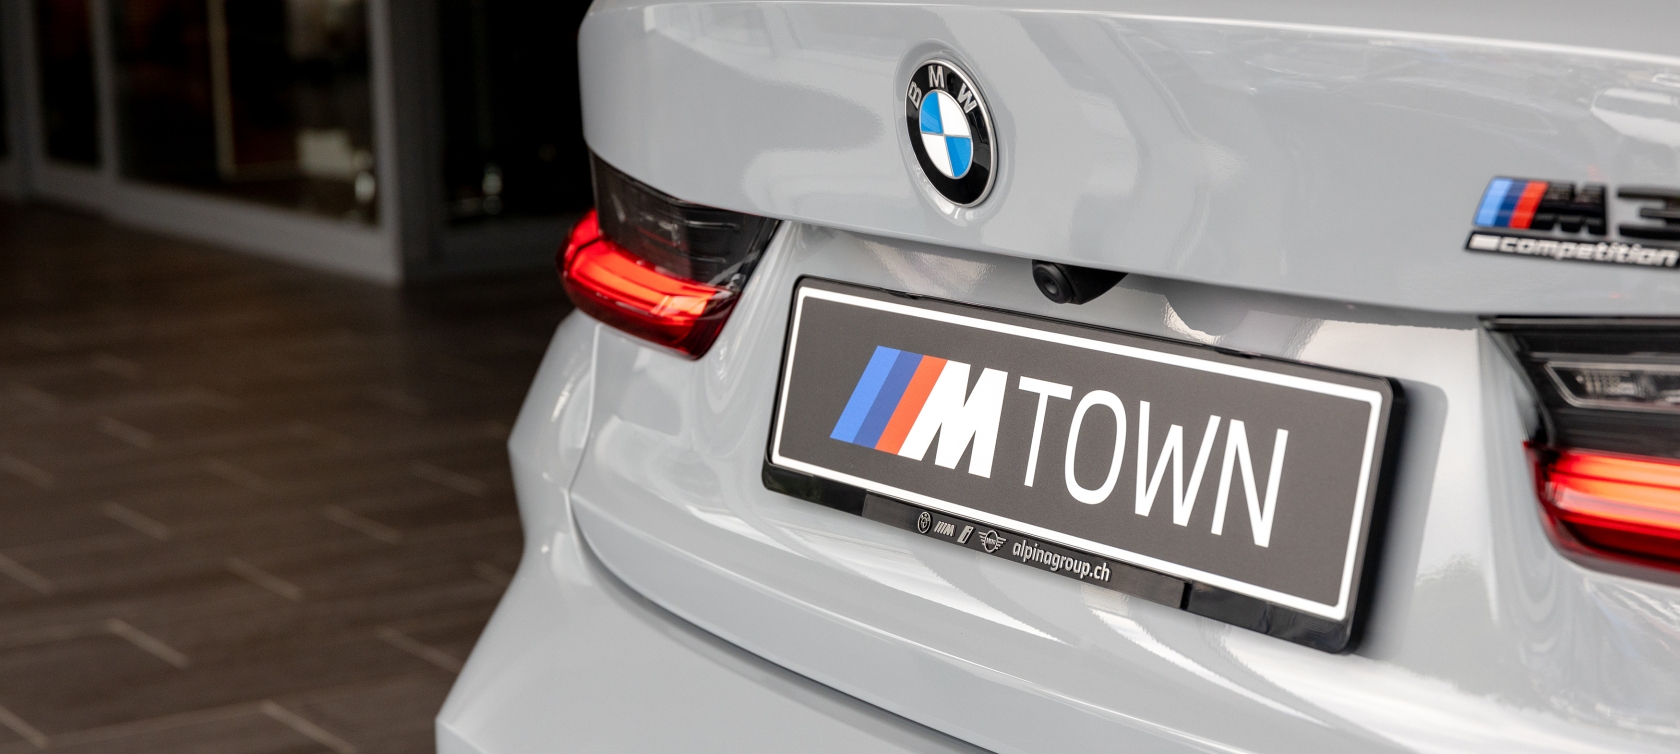 BMW M TOWN